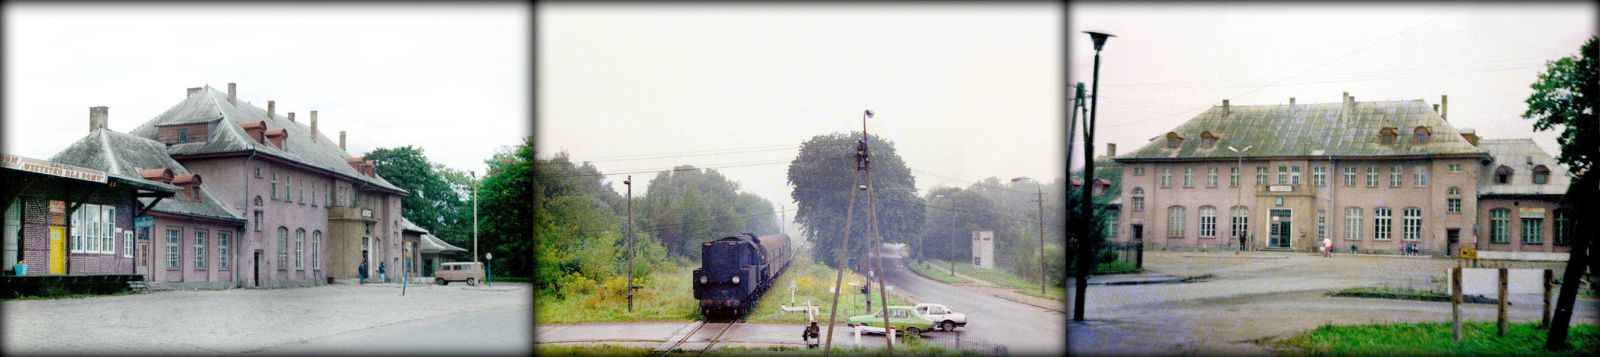 Gołdap w dniu 29.09.1990. Ol49-9 z Ełku, wjeżdża na stację Gołdap w dniu 02.09.1989. Gołdap w dniu 02.09.1989.